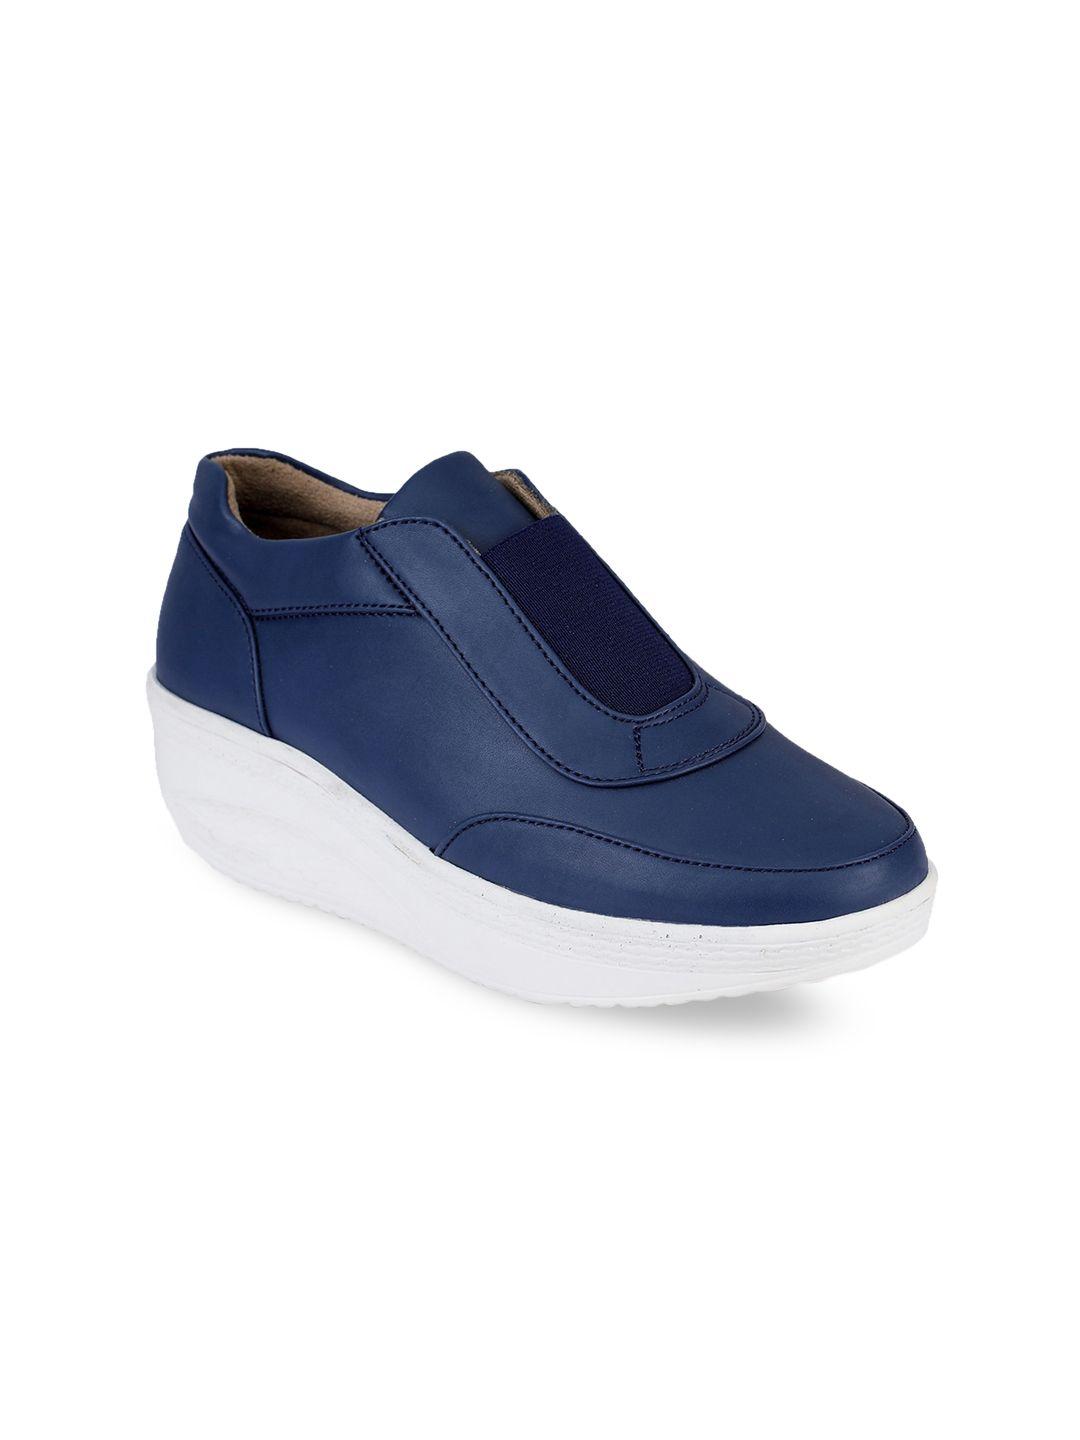 valiosaa women navy blue sneakers